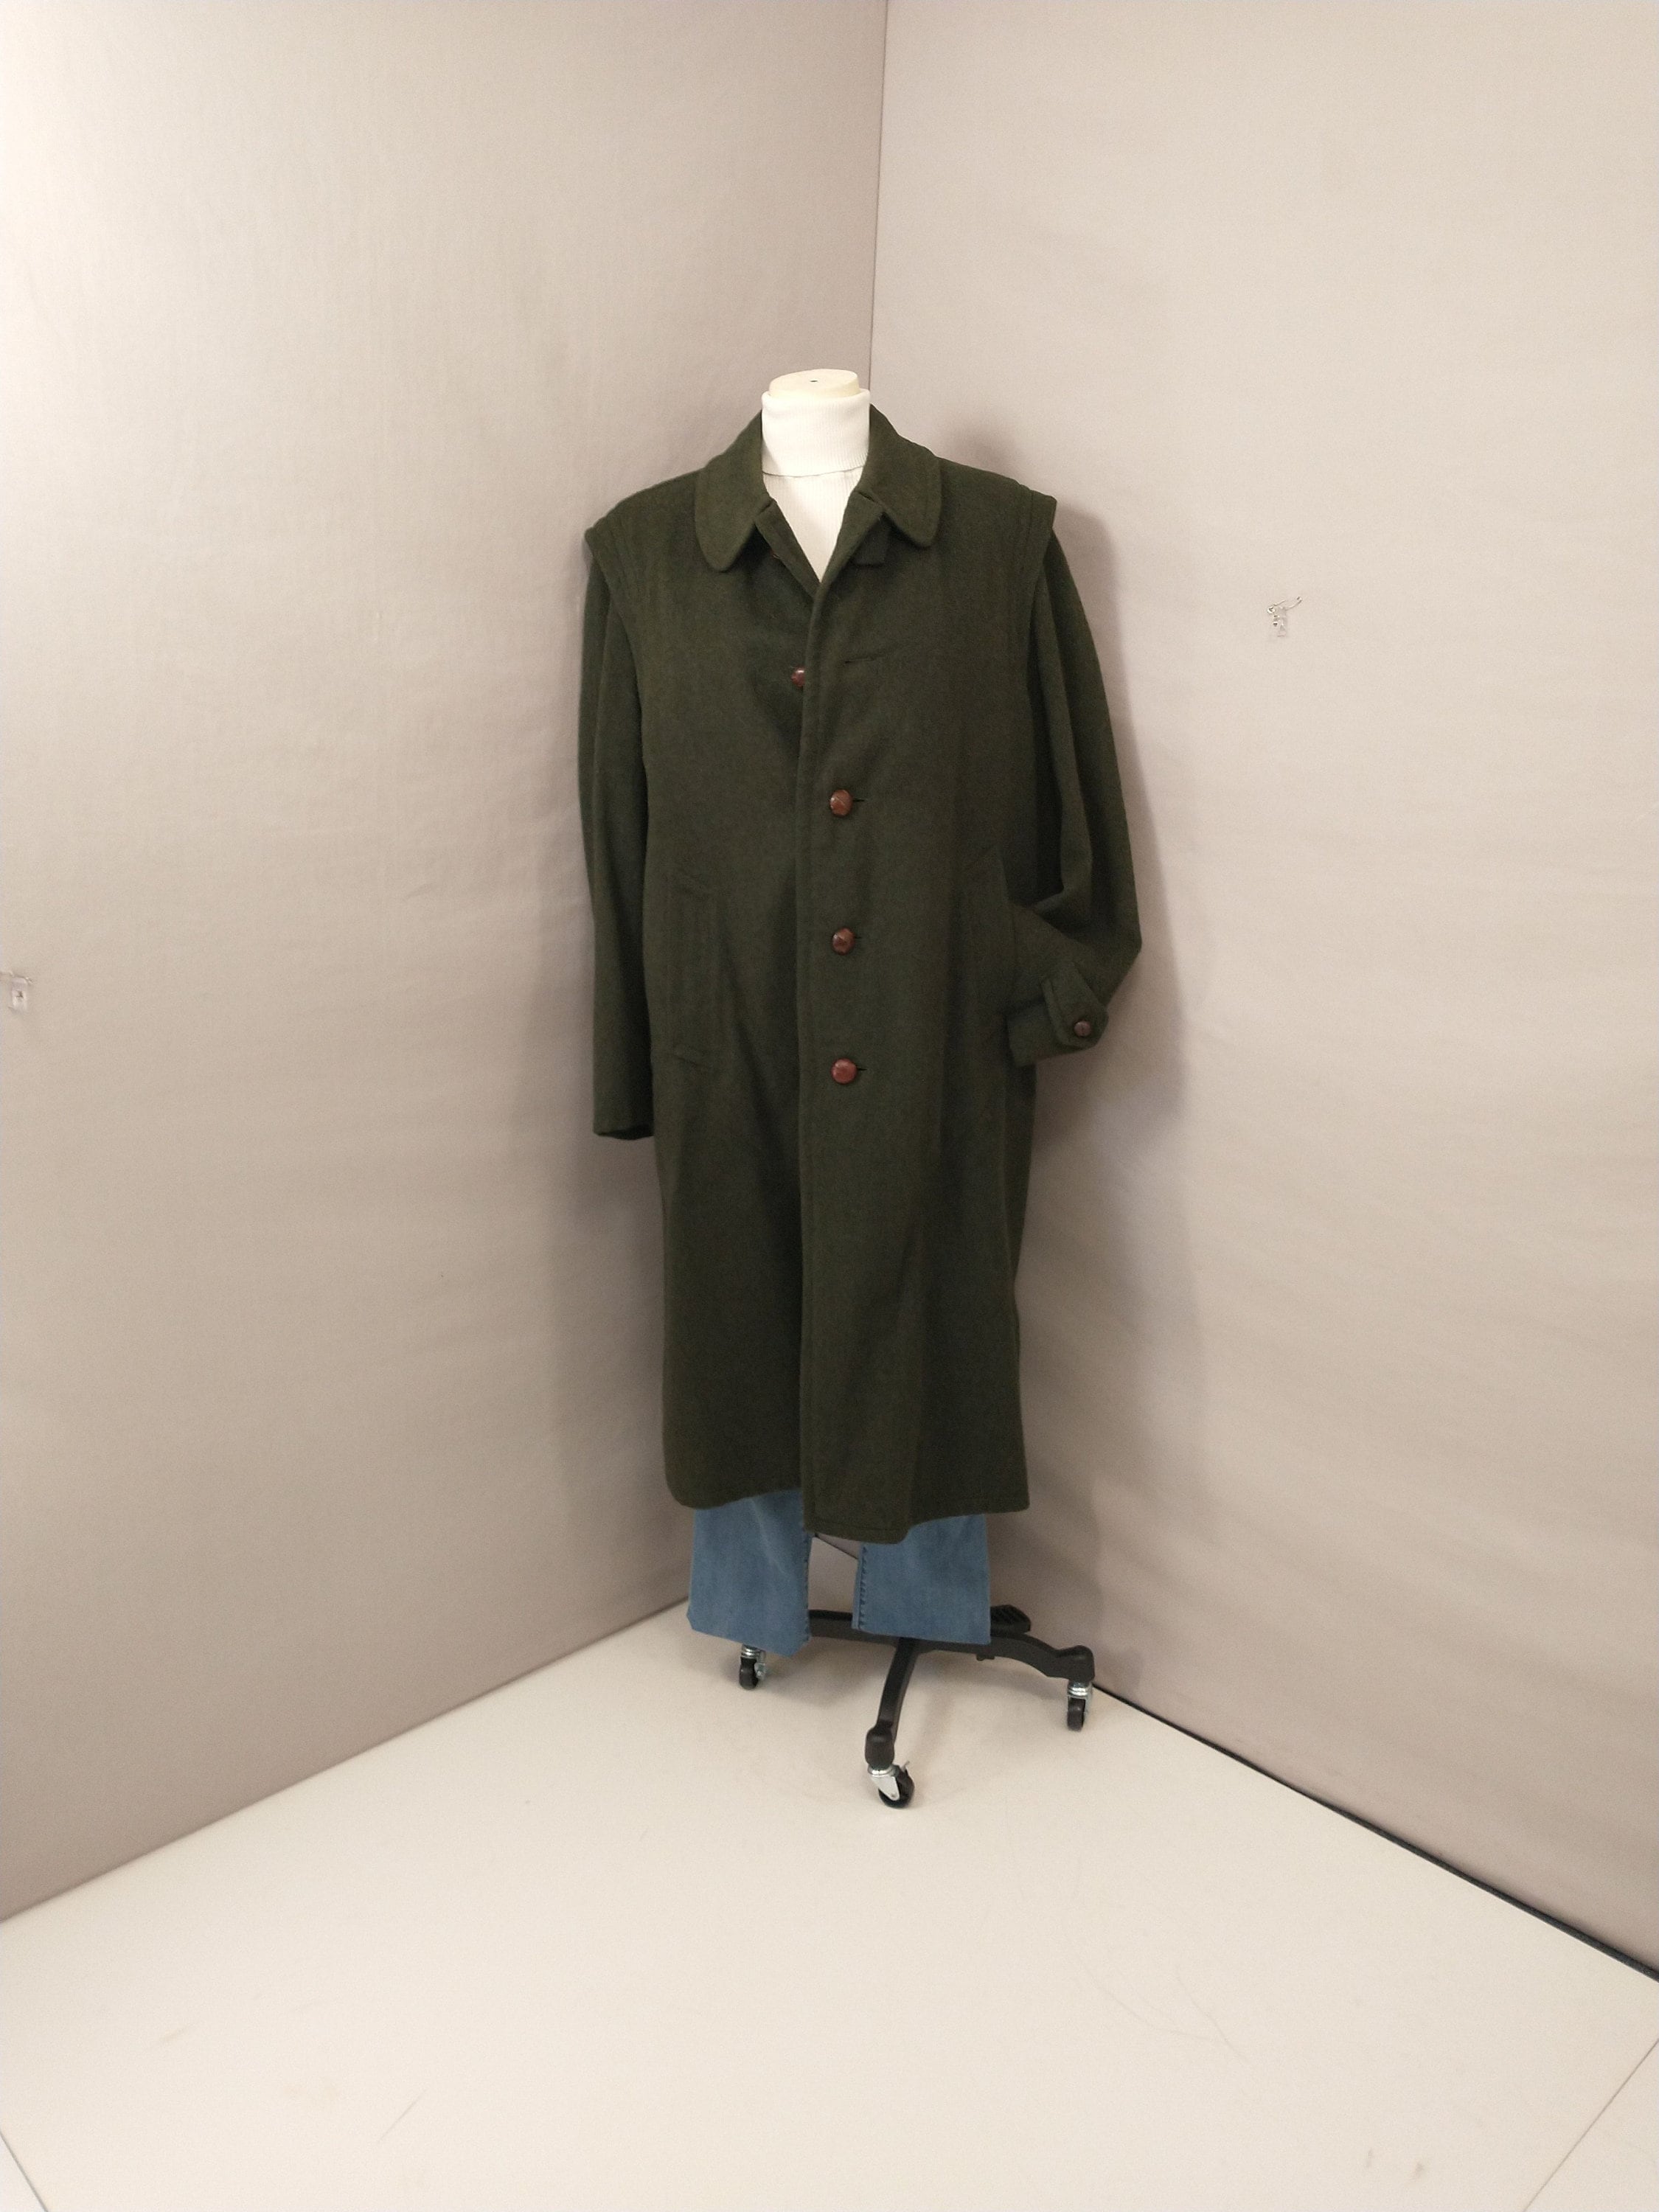 Sud Tiroler - Men's Loden Green Overcoat with ZIP - RWS - Robert W